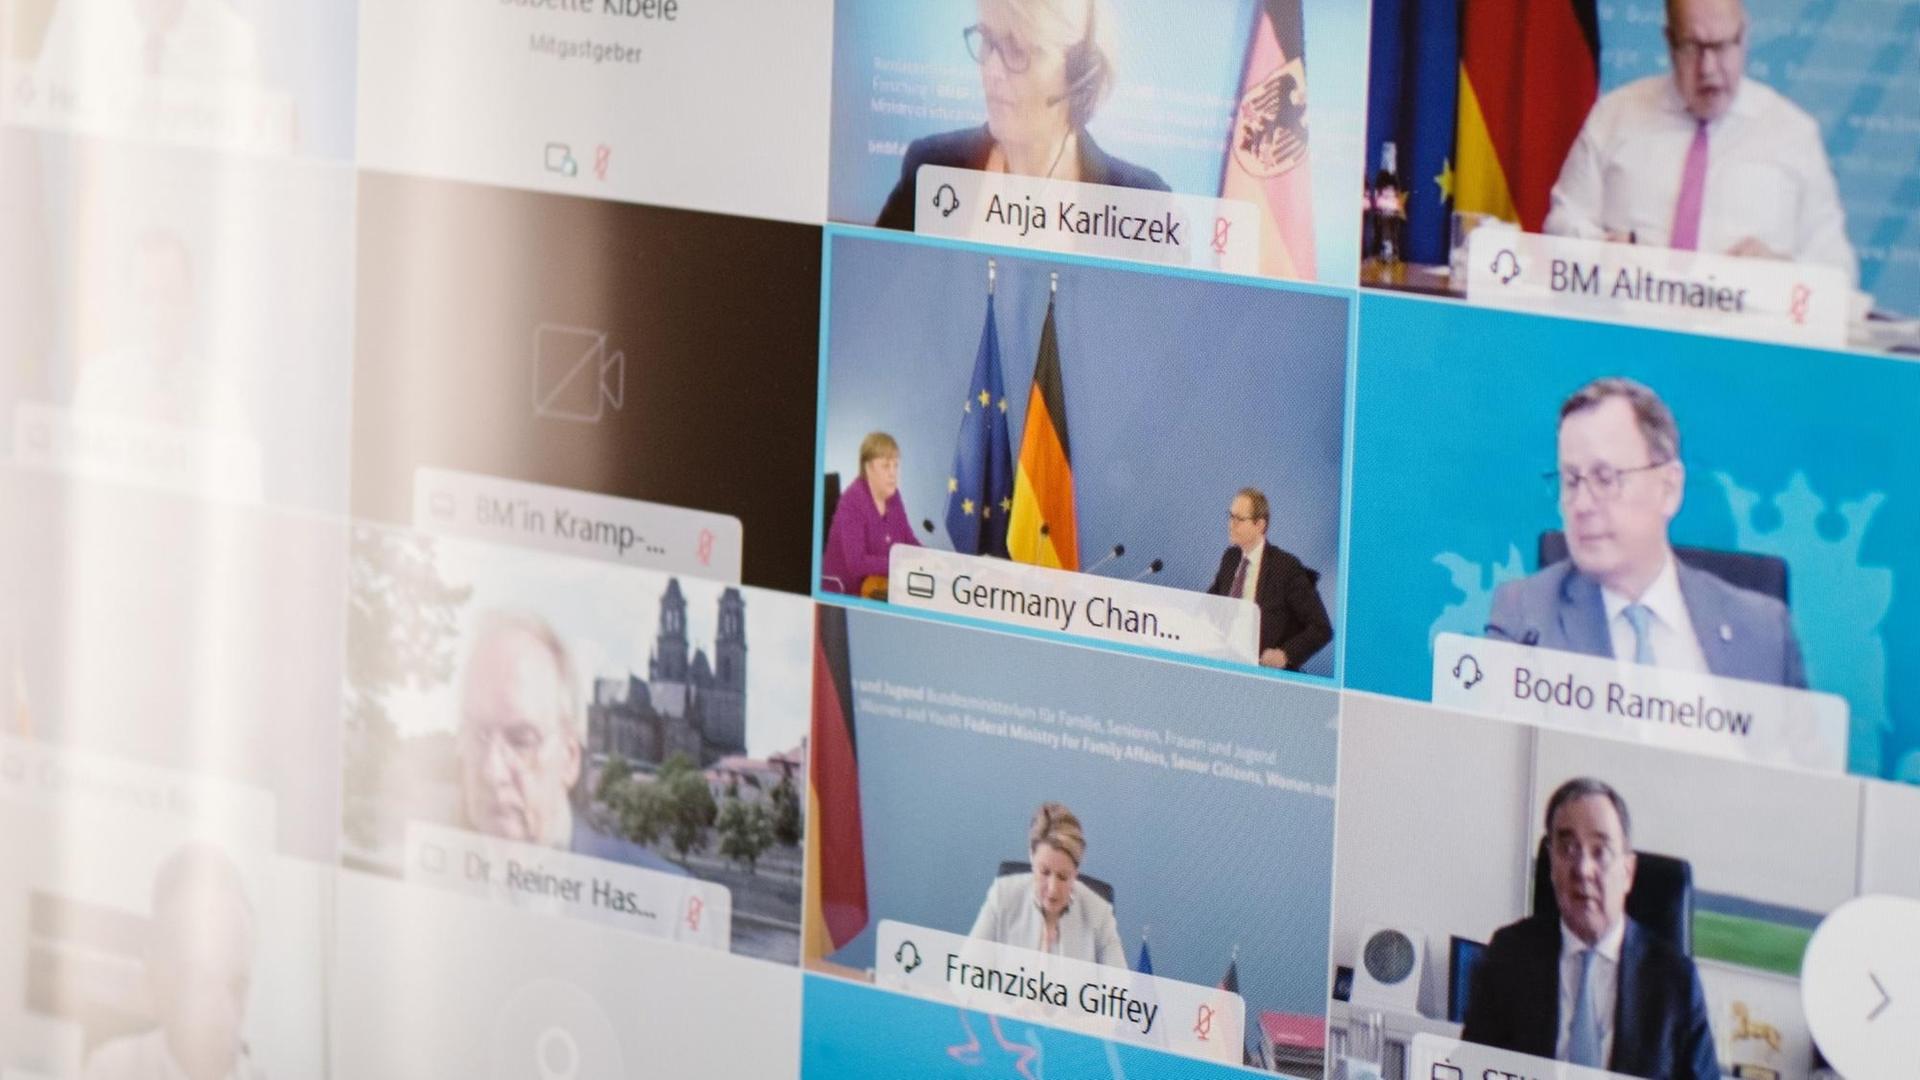 Auf einer Leinwand sind die Gesichter von führenden deutschen Politikerinnen und Politikern zu sehen. 